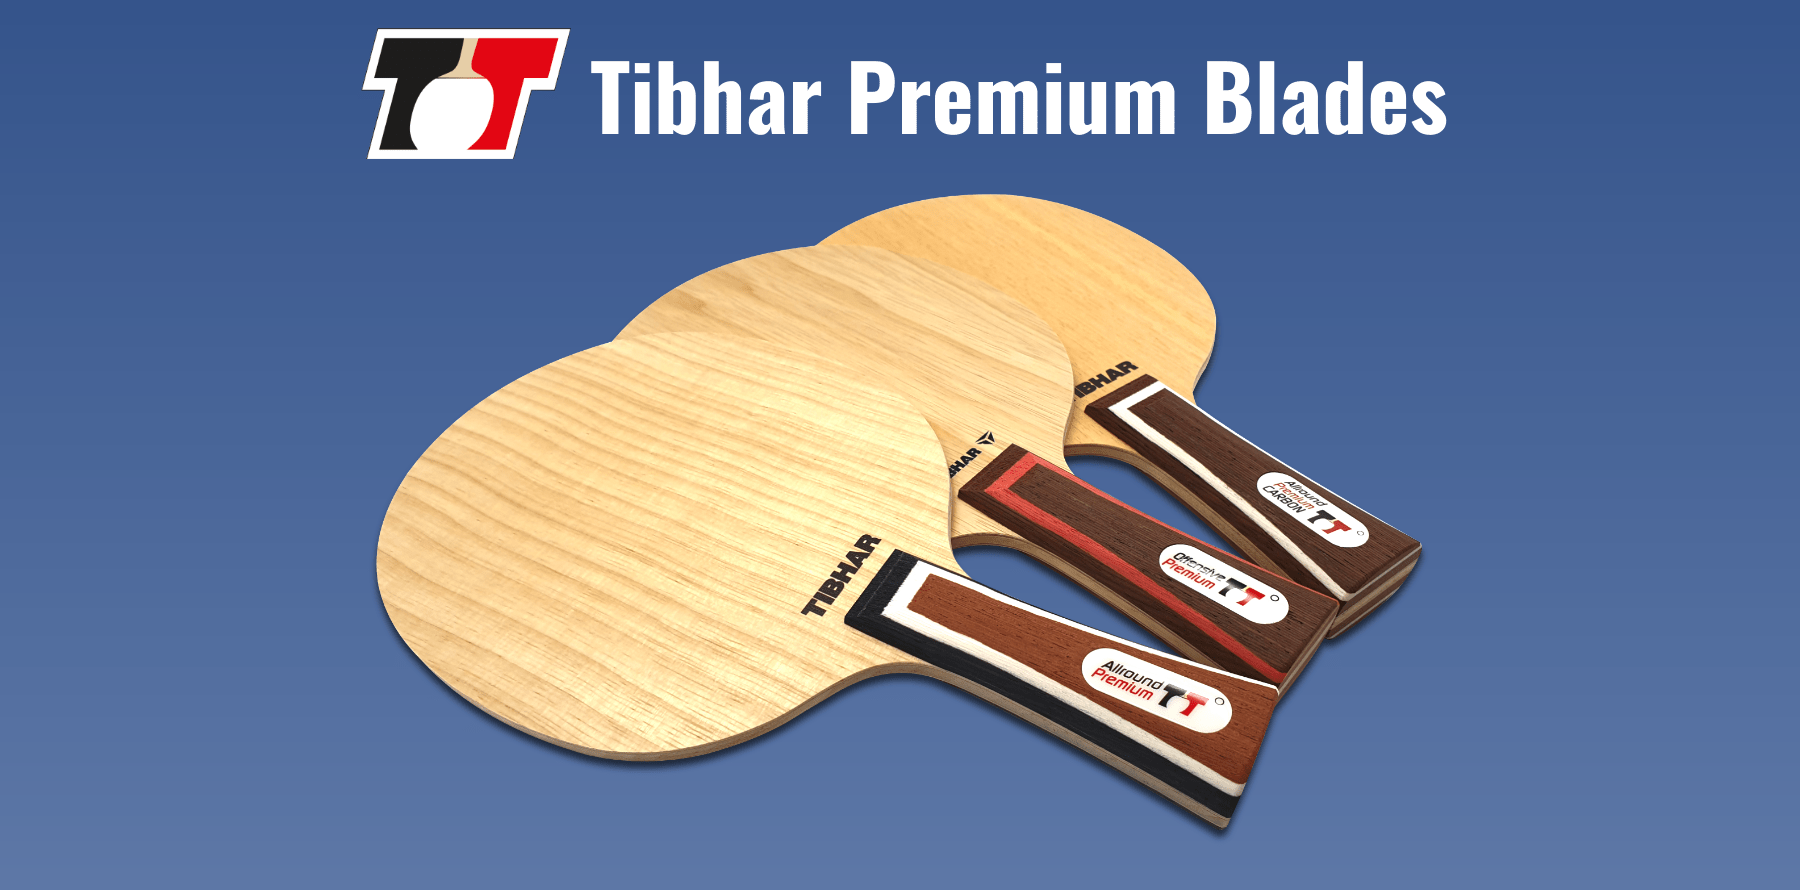 Tibhar Premium Blades Best Standard Table Tennis Blades